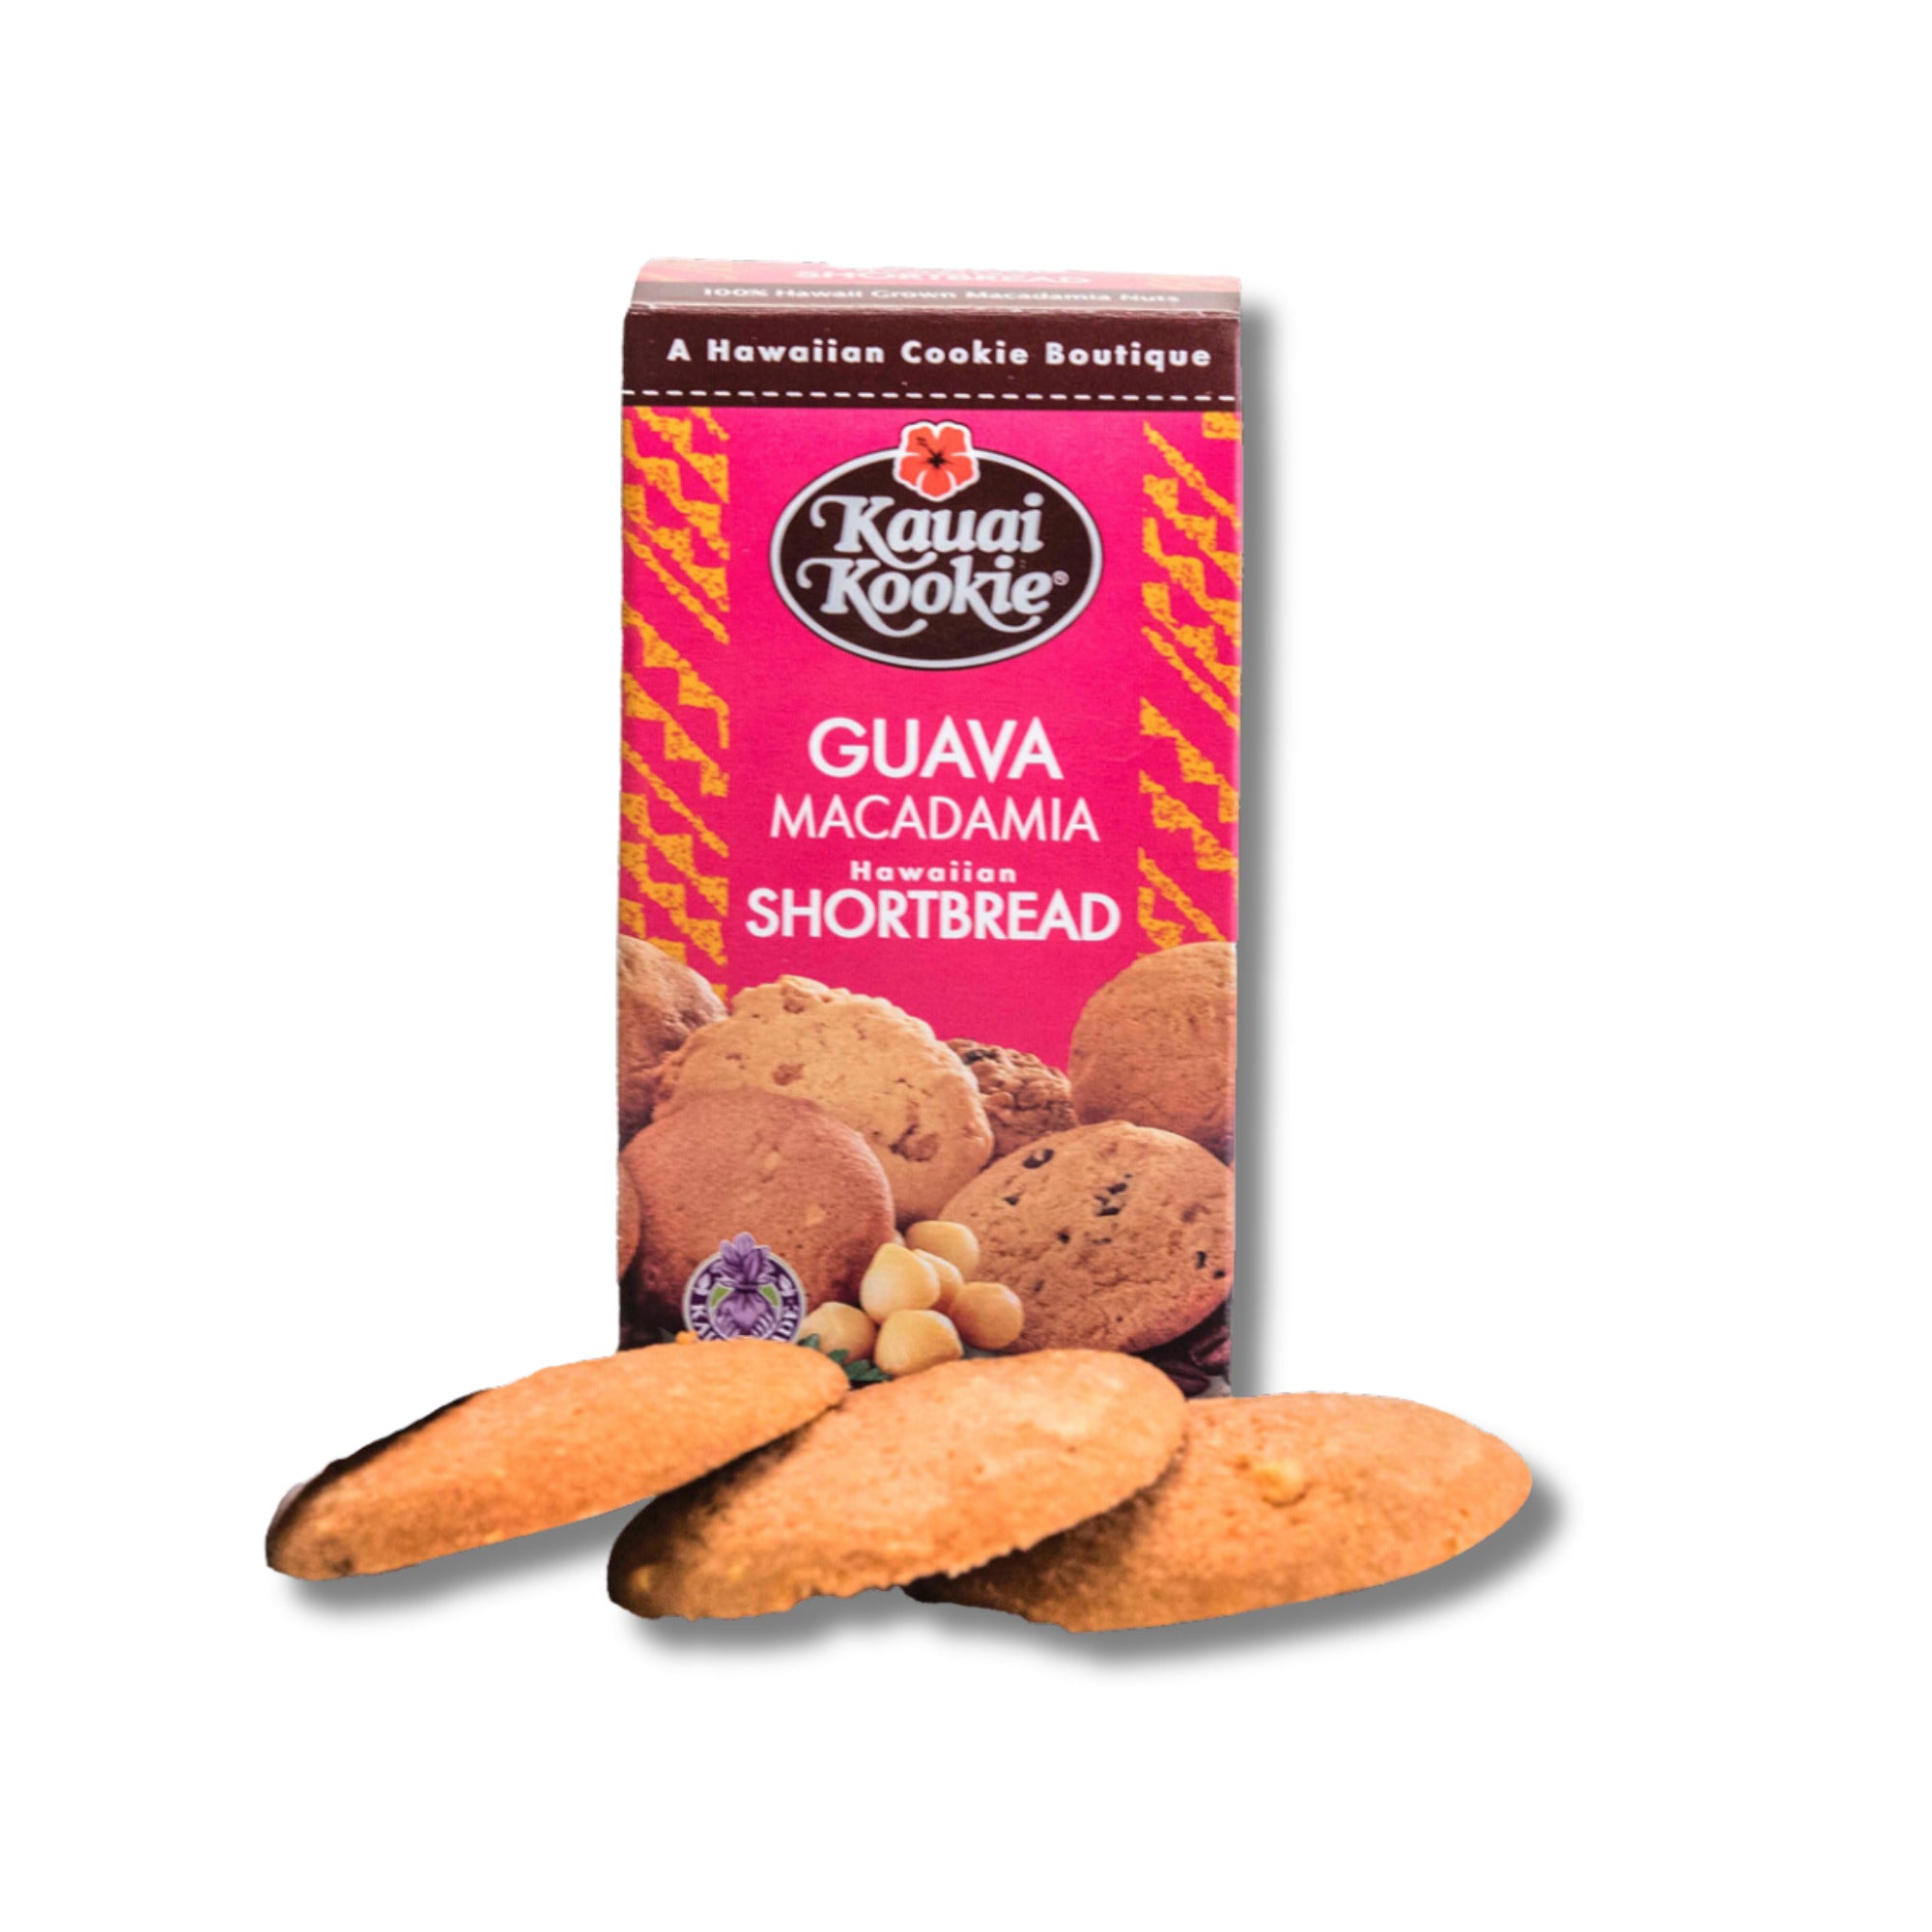 Pop-Up Mākeke - Kauai Kookie - Hawaiian Shortbread Guava Macadamia Nut Cookies - 5oz